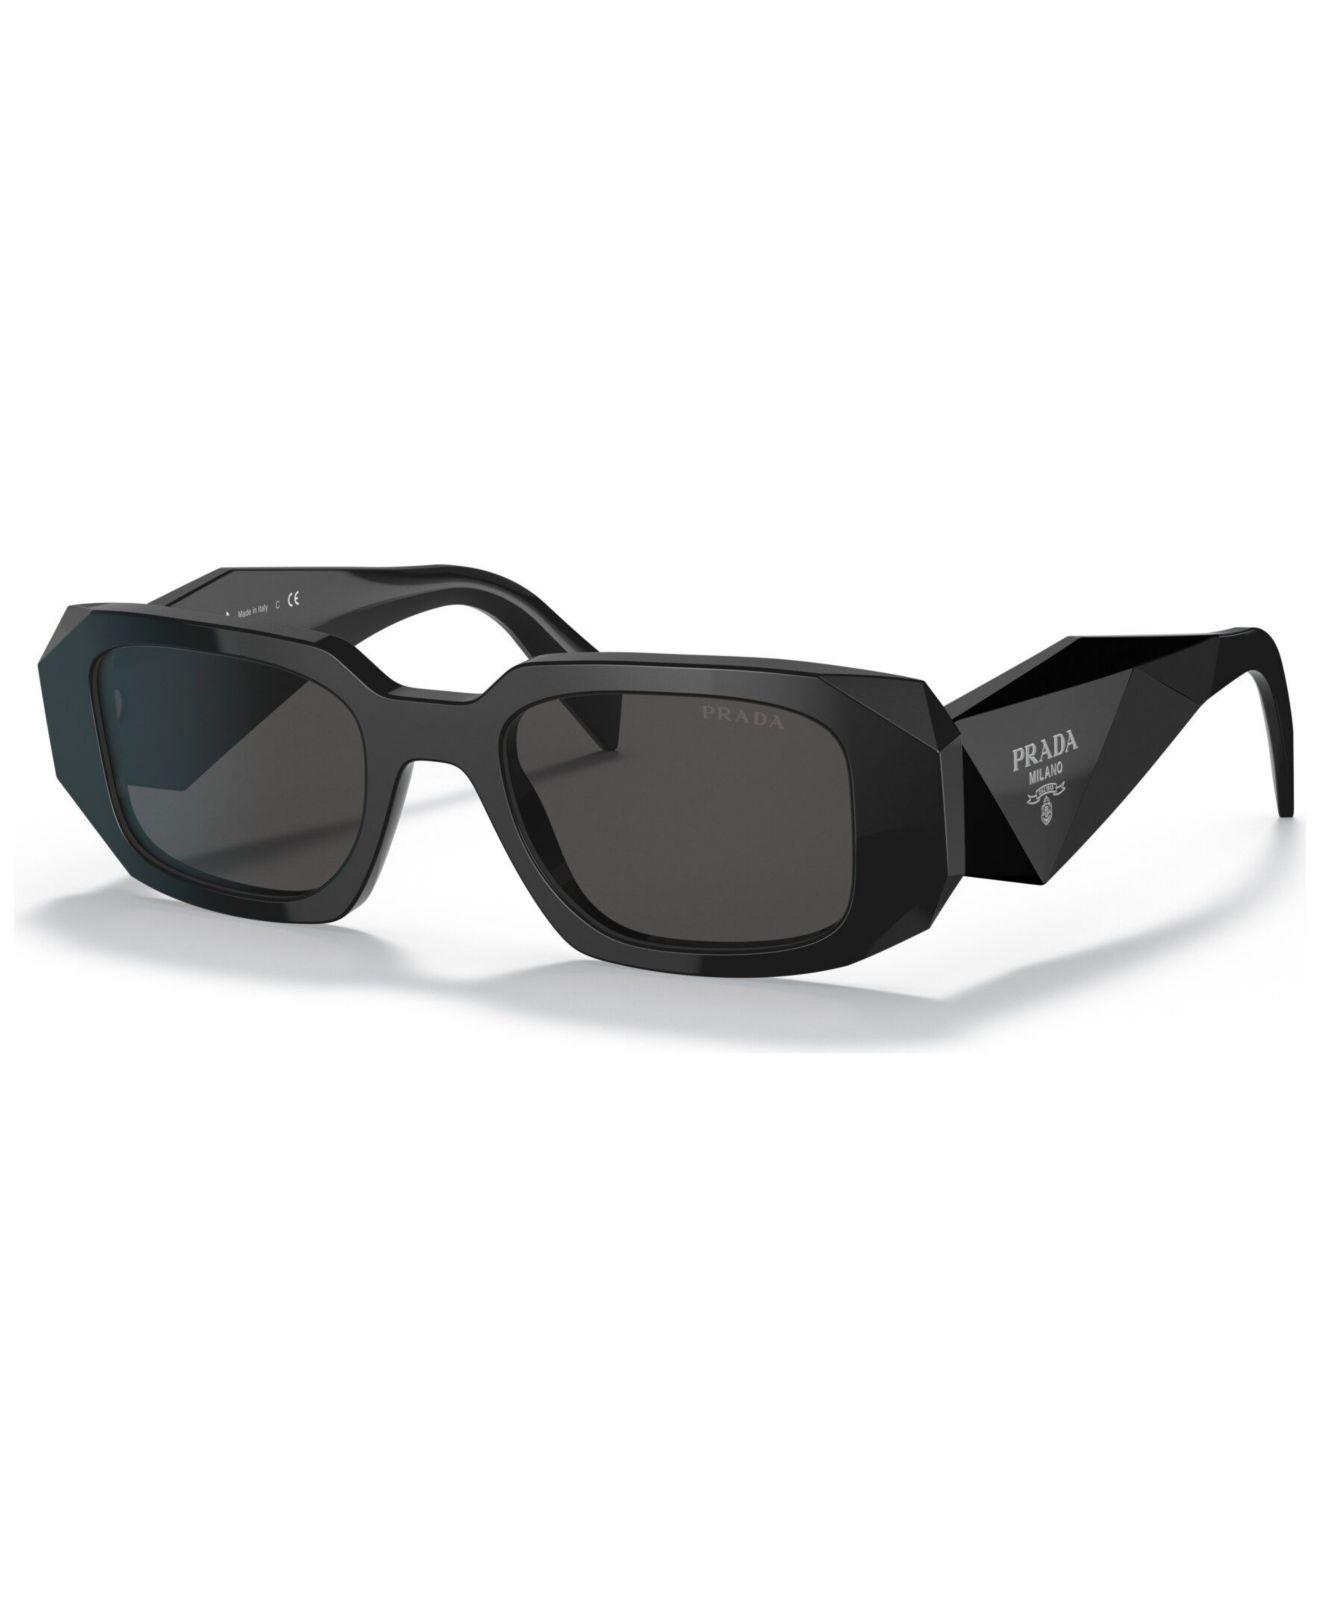 Prada Low Bridge Fit Sunglasses, Pr 17wsf 51 in Black | Lyst